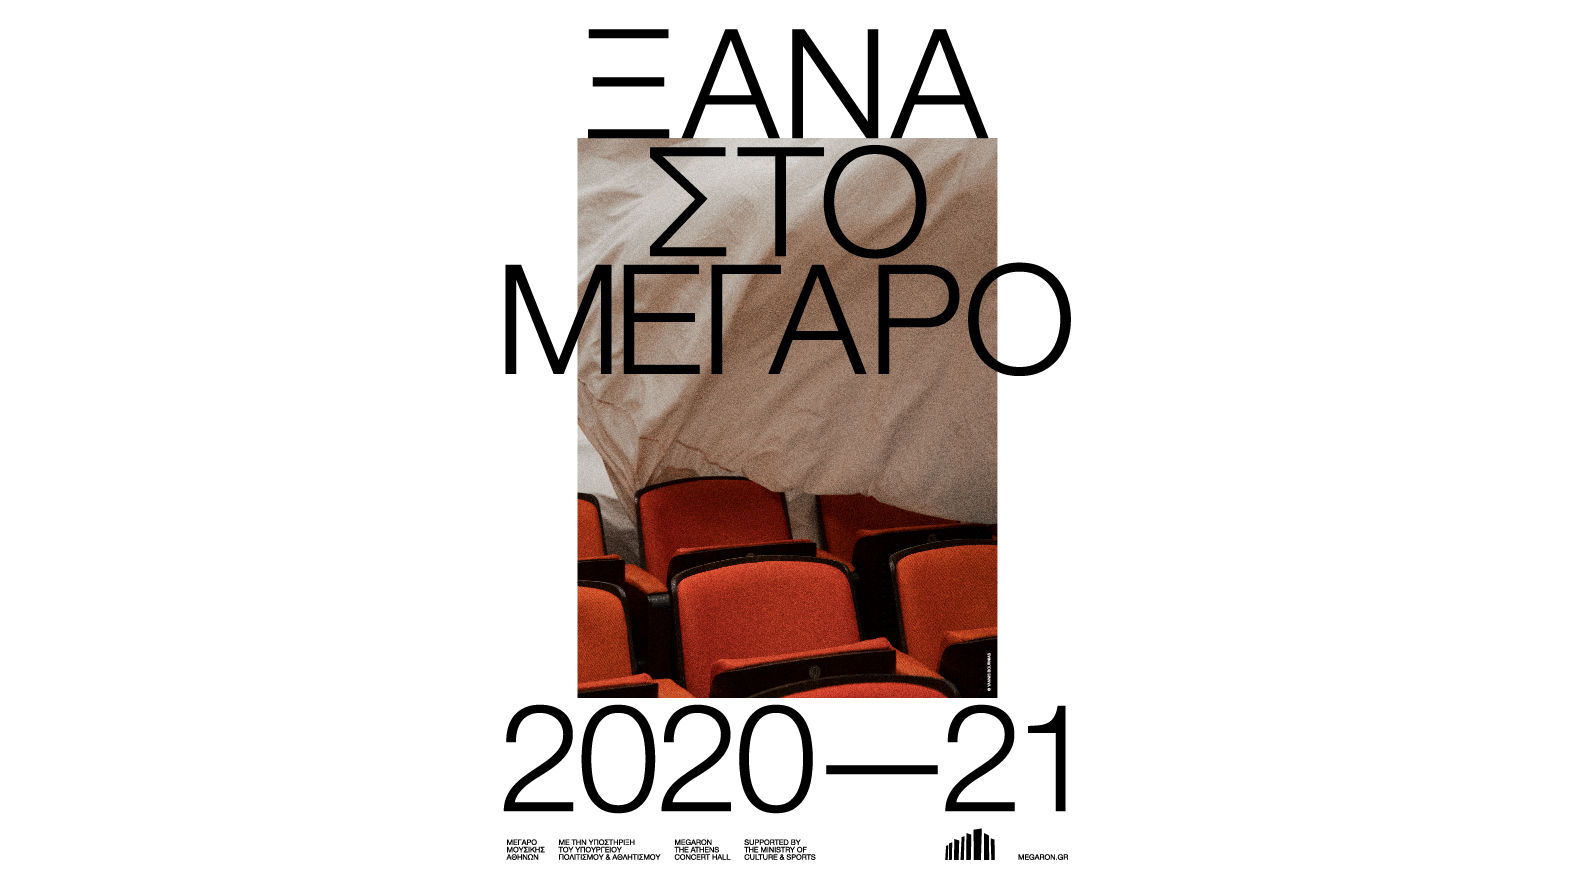 Τα εκπαιδευτικά προγράμματα του Μεγάρου για τη σεζόν 2020-2021